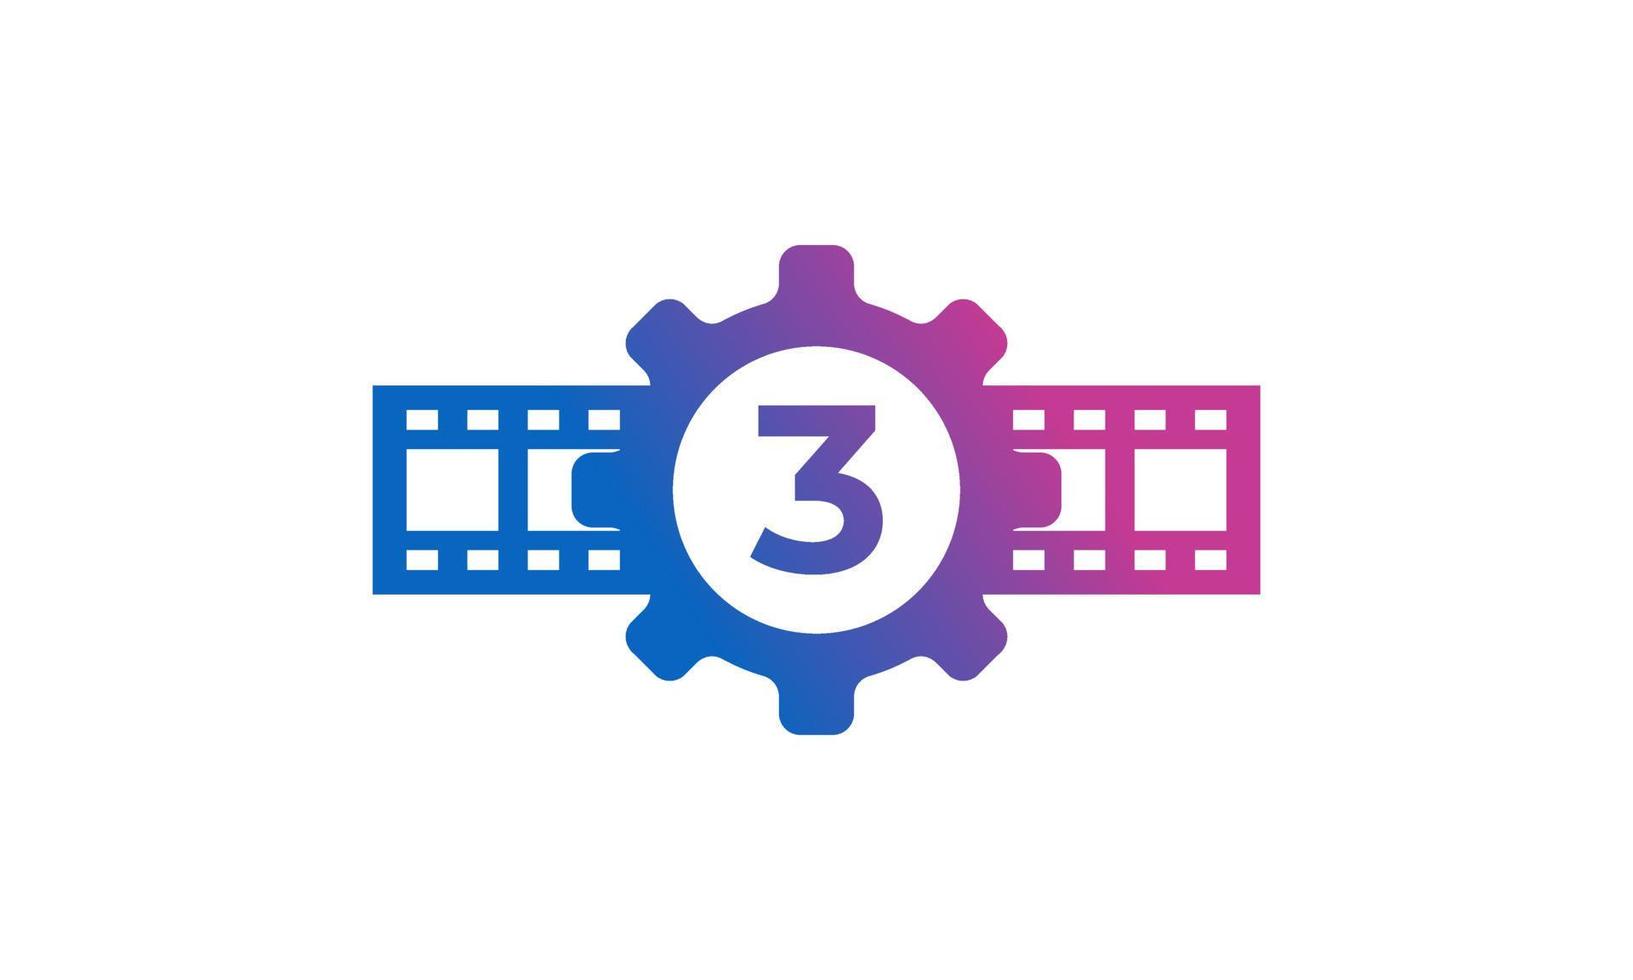 zahnrad nummer 3 mit rollenstreifen filmstreifen für film film kino produktionsstudio logo inspiration vektor